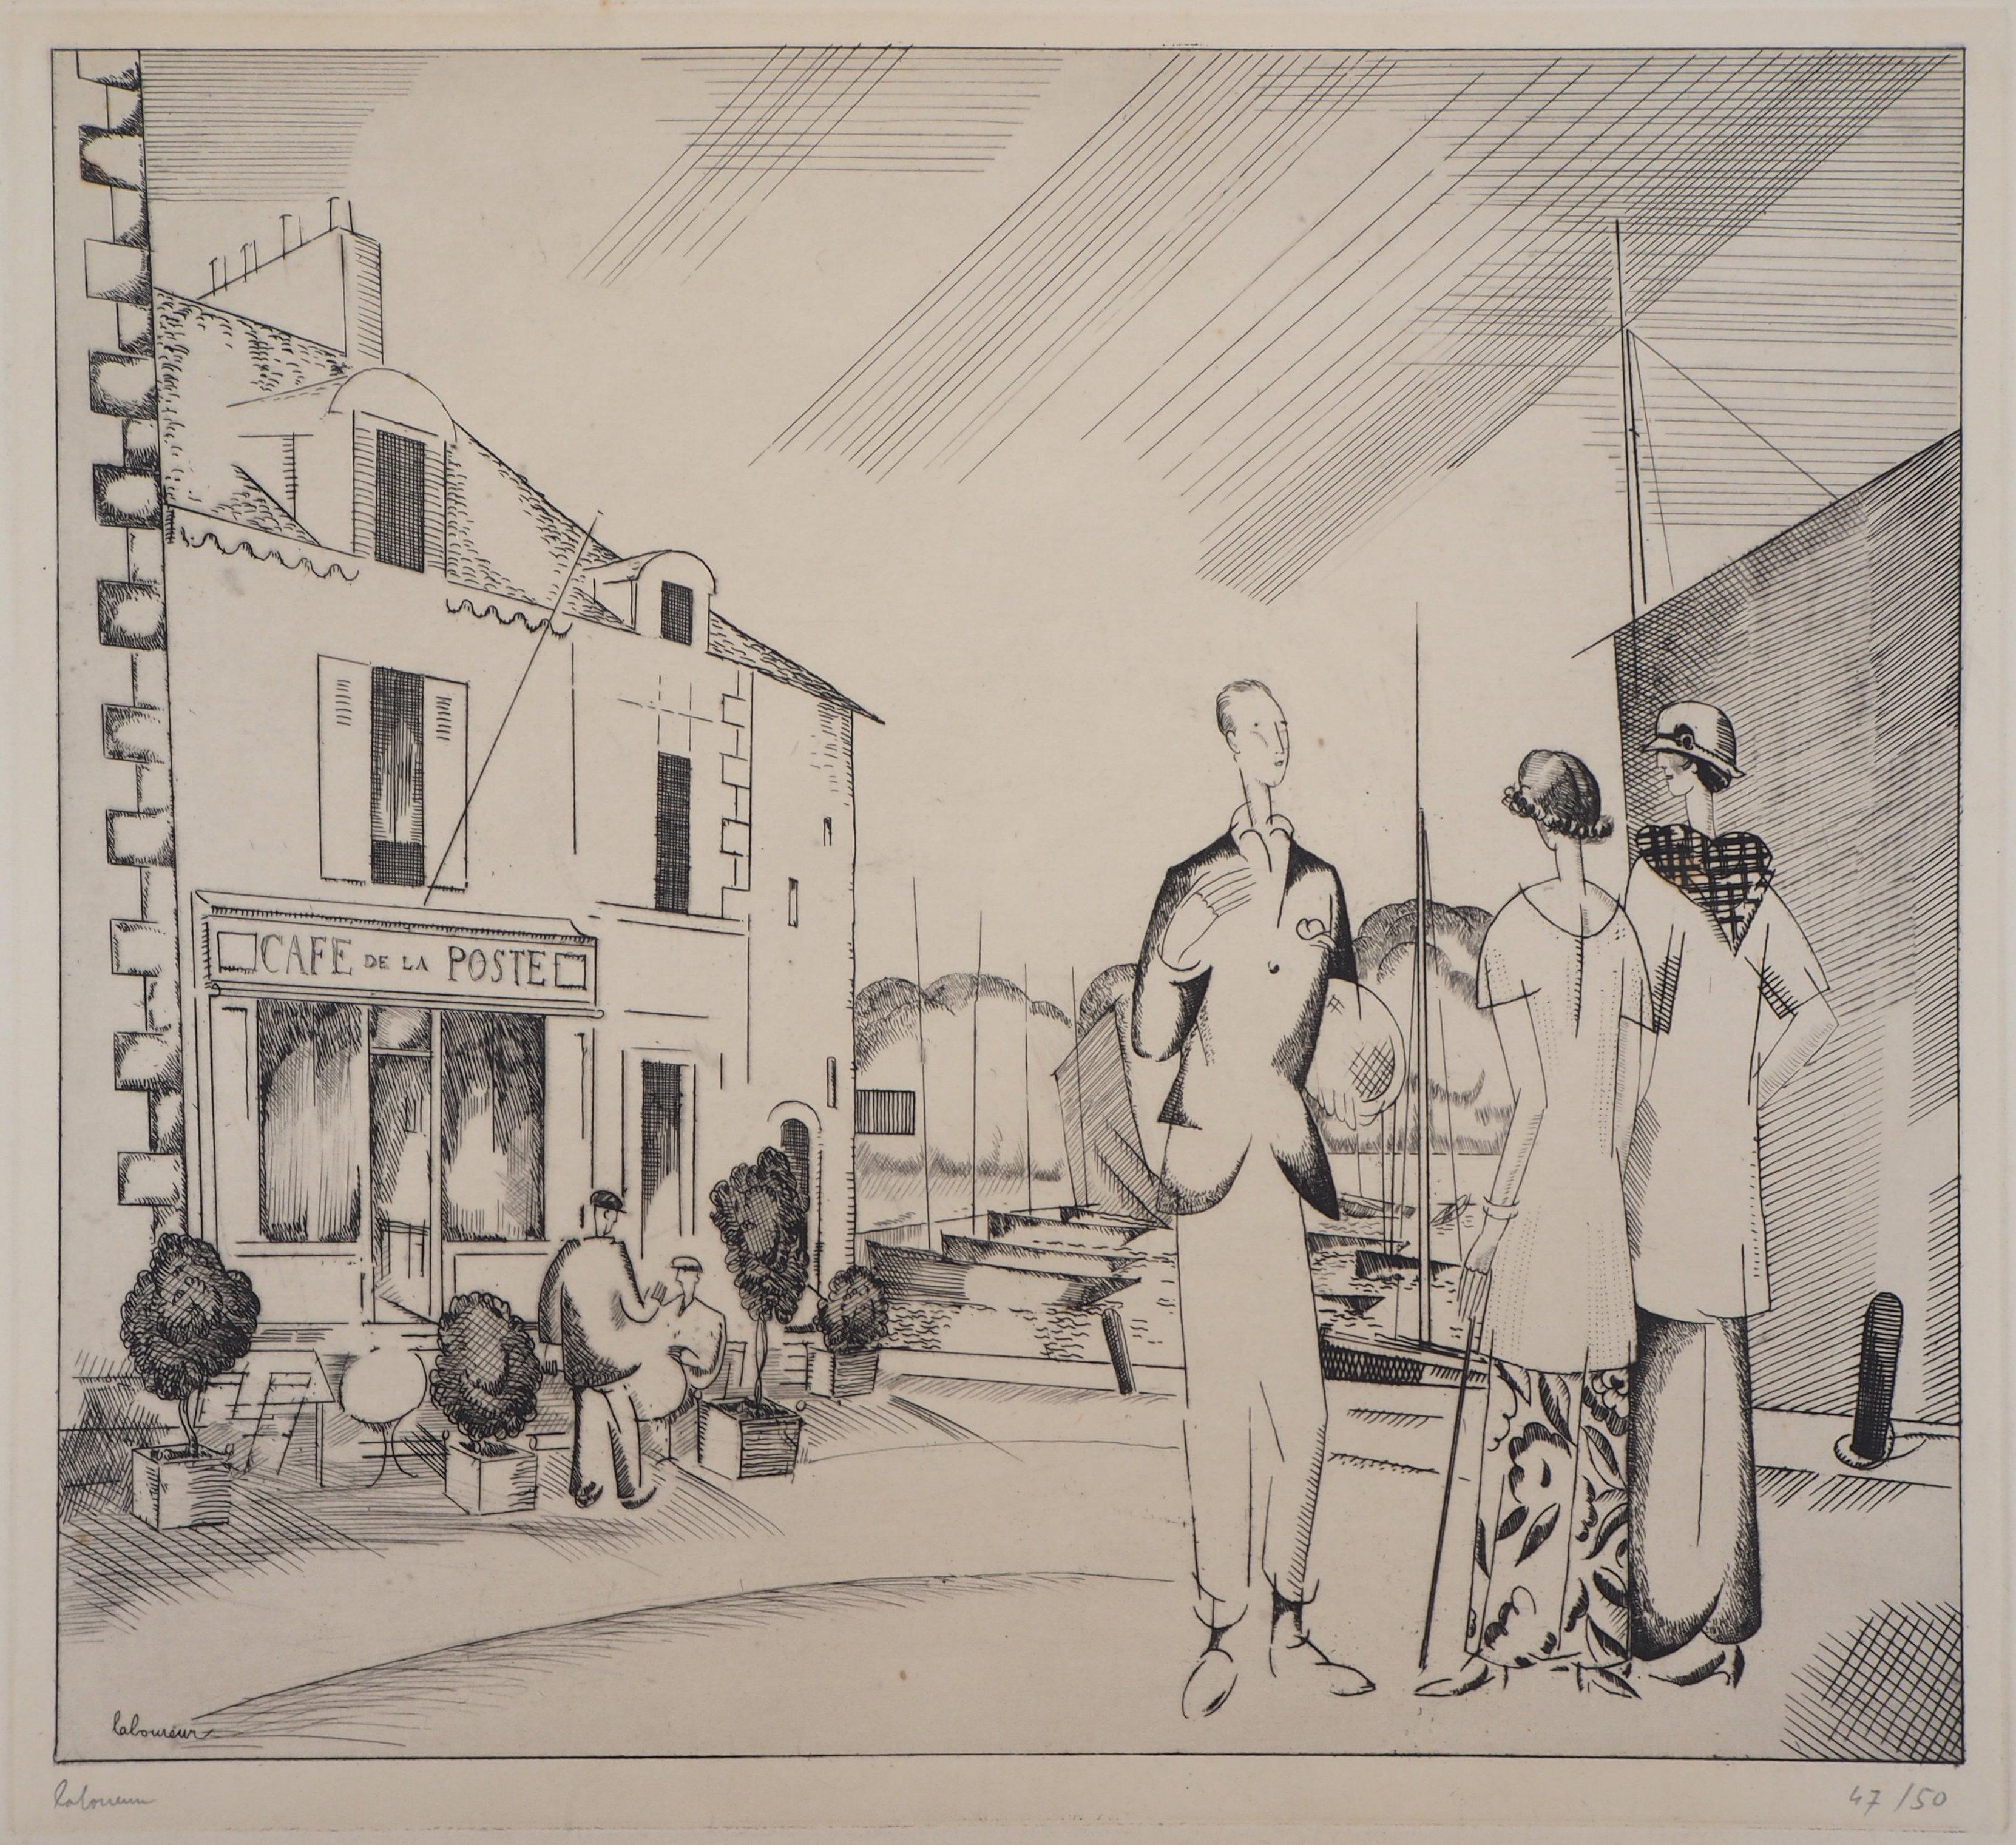 Jean-Emile Laboureur Still-Life Print - The Harbor Cafe - Original Etching, Handsigned